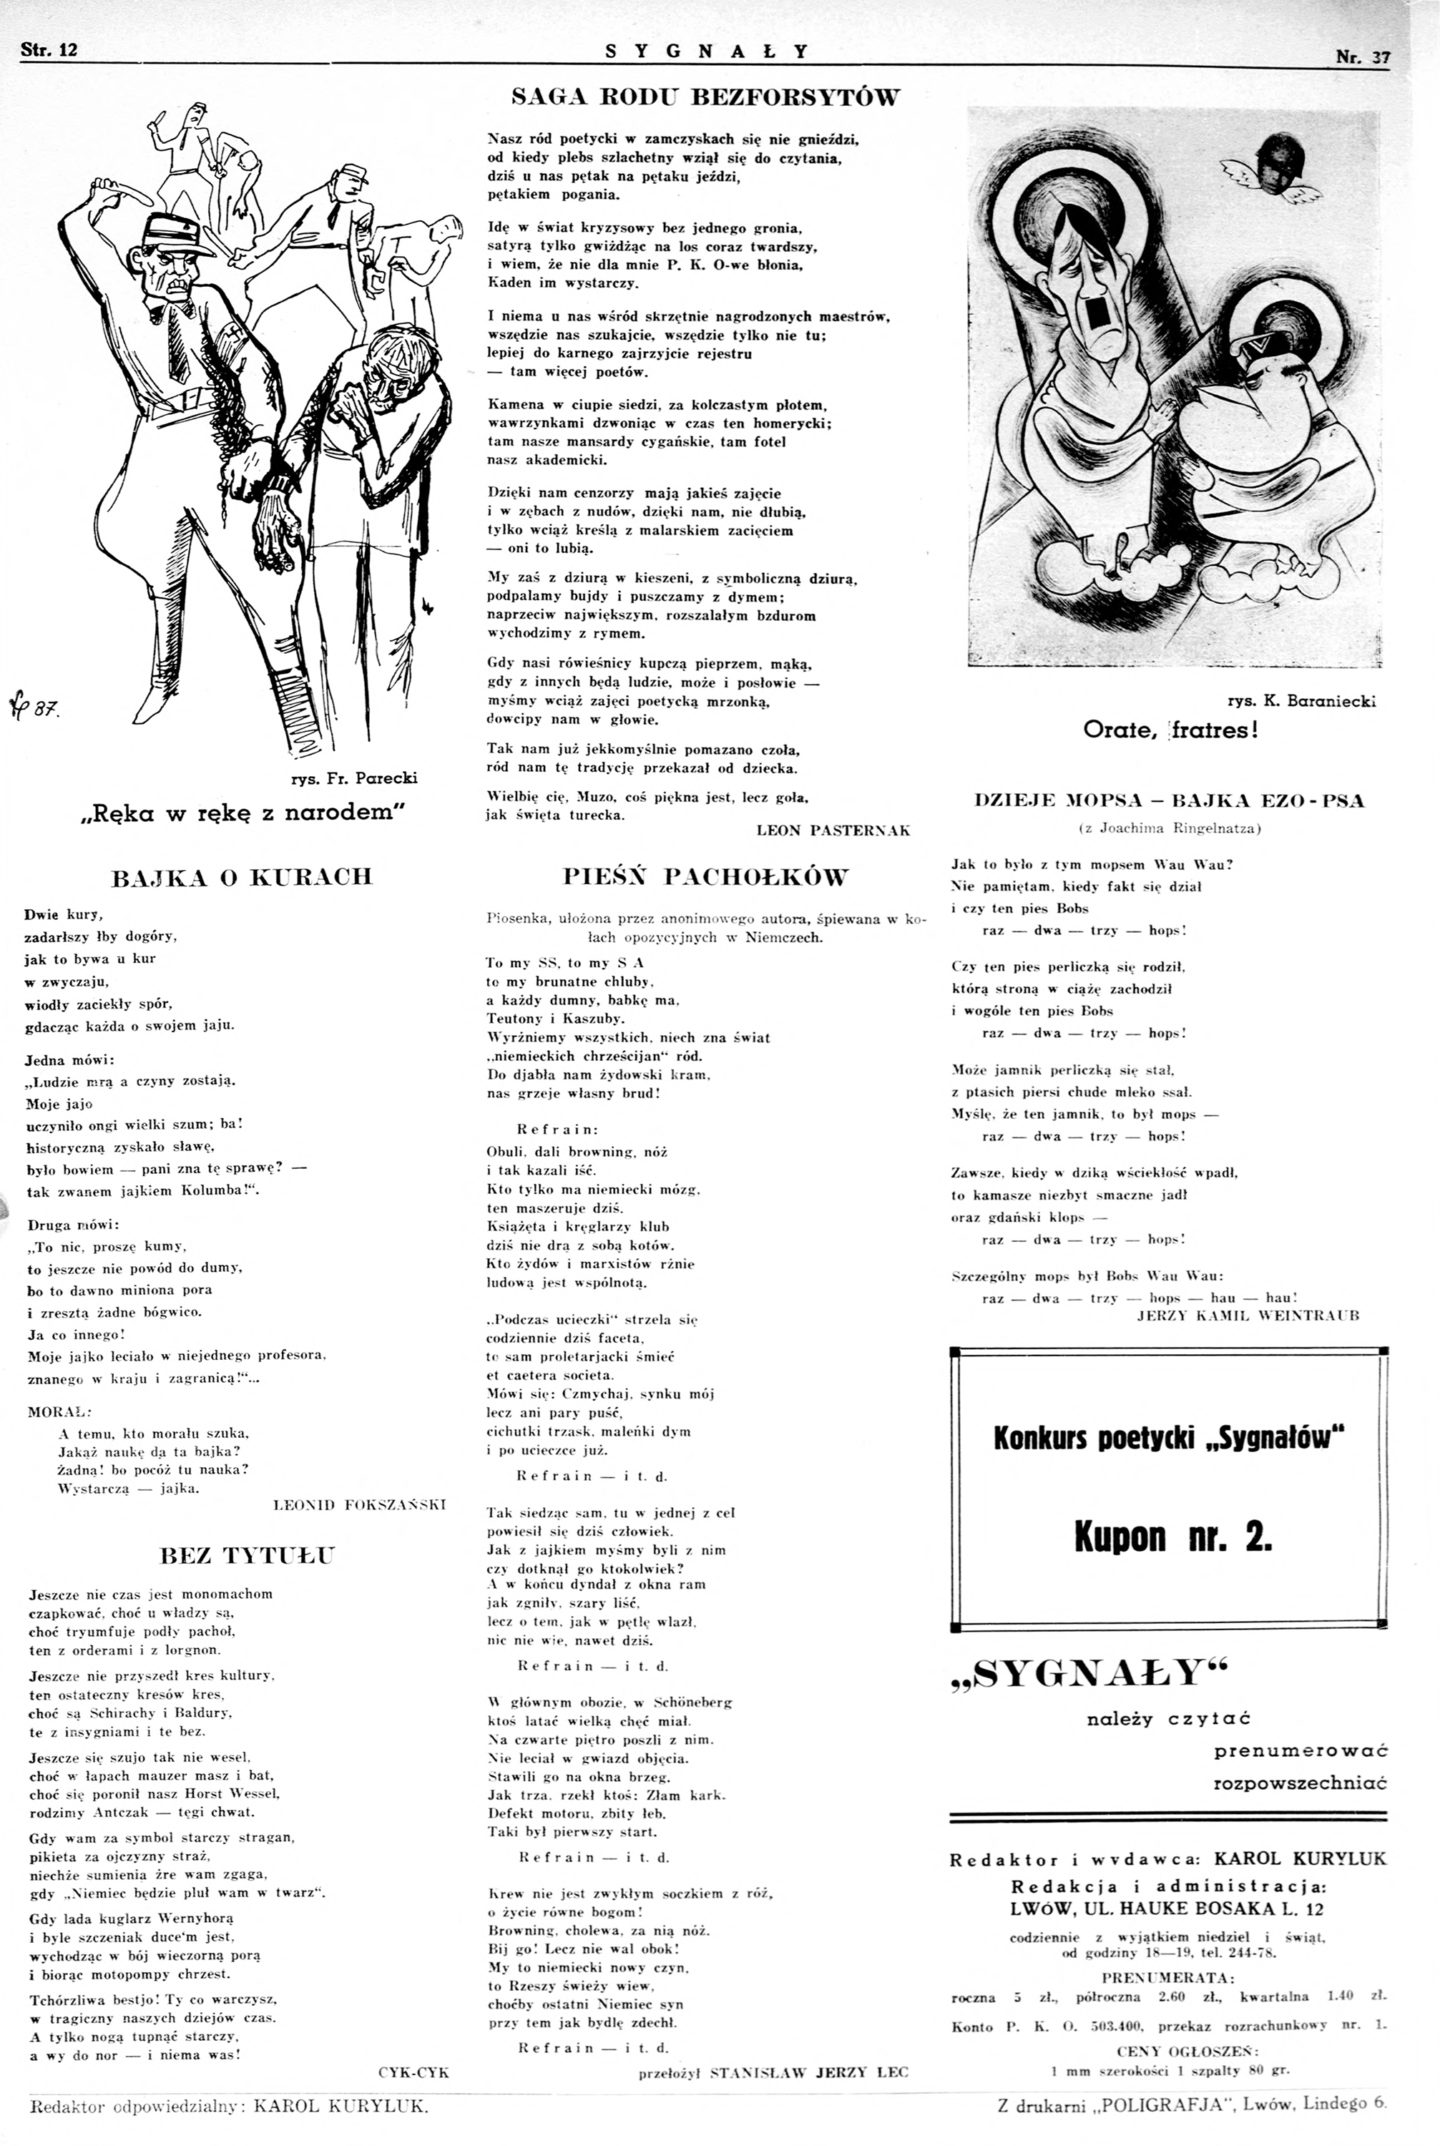 Ostatnia stronica „Sygnałów” 37/1938 / Last page, "Sygnały" 37/1938